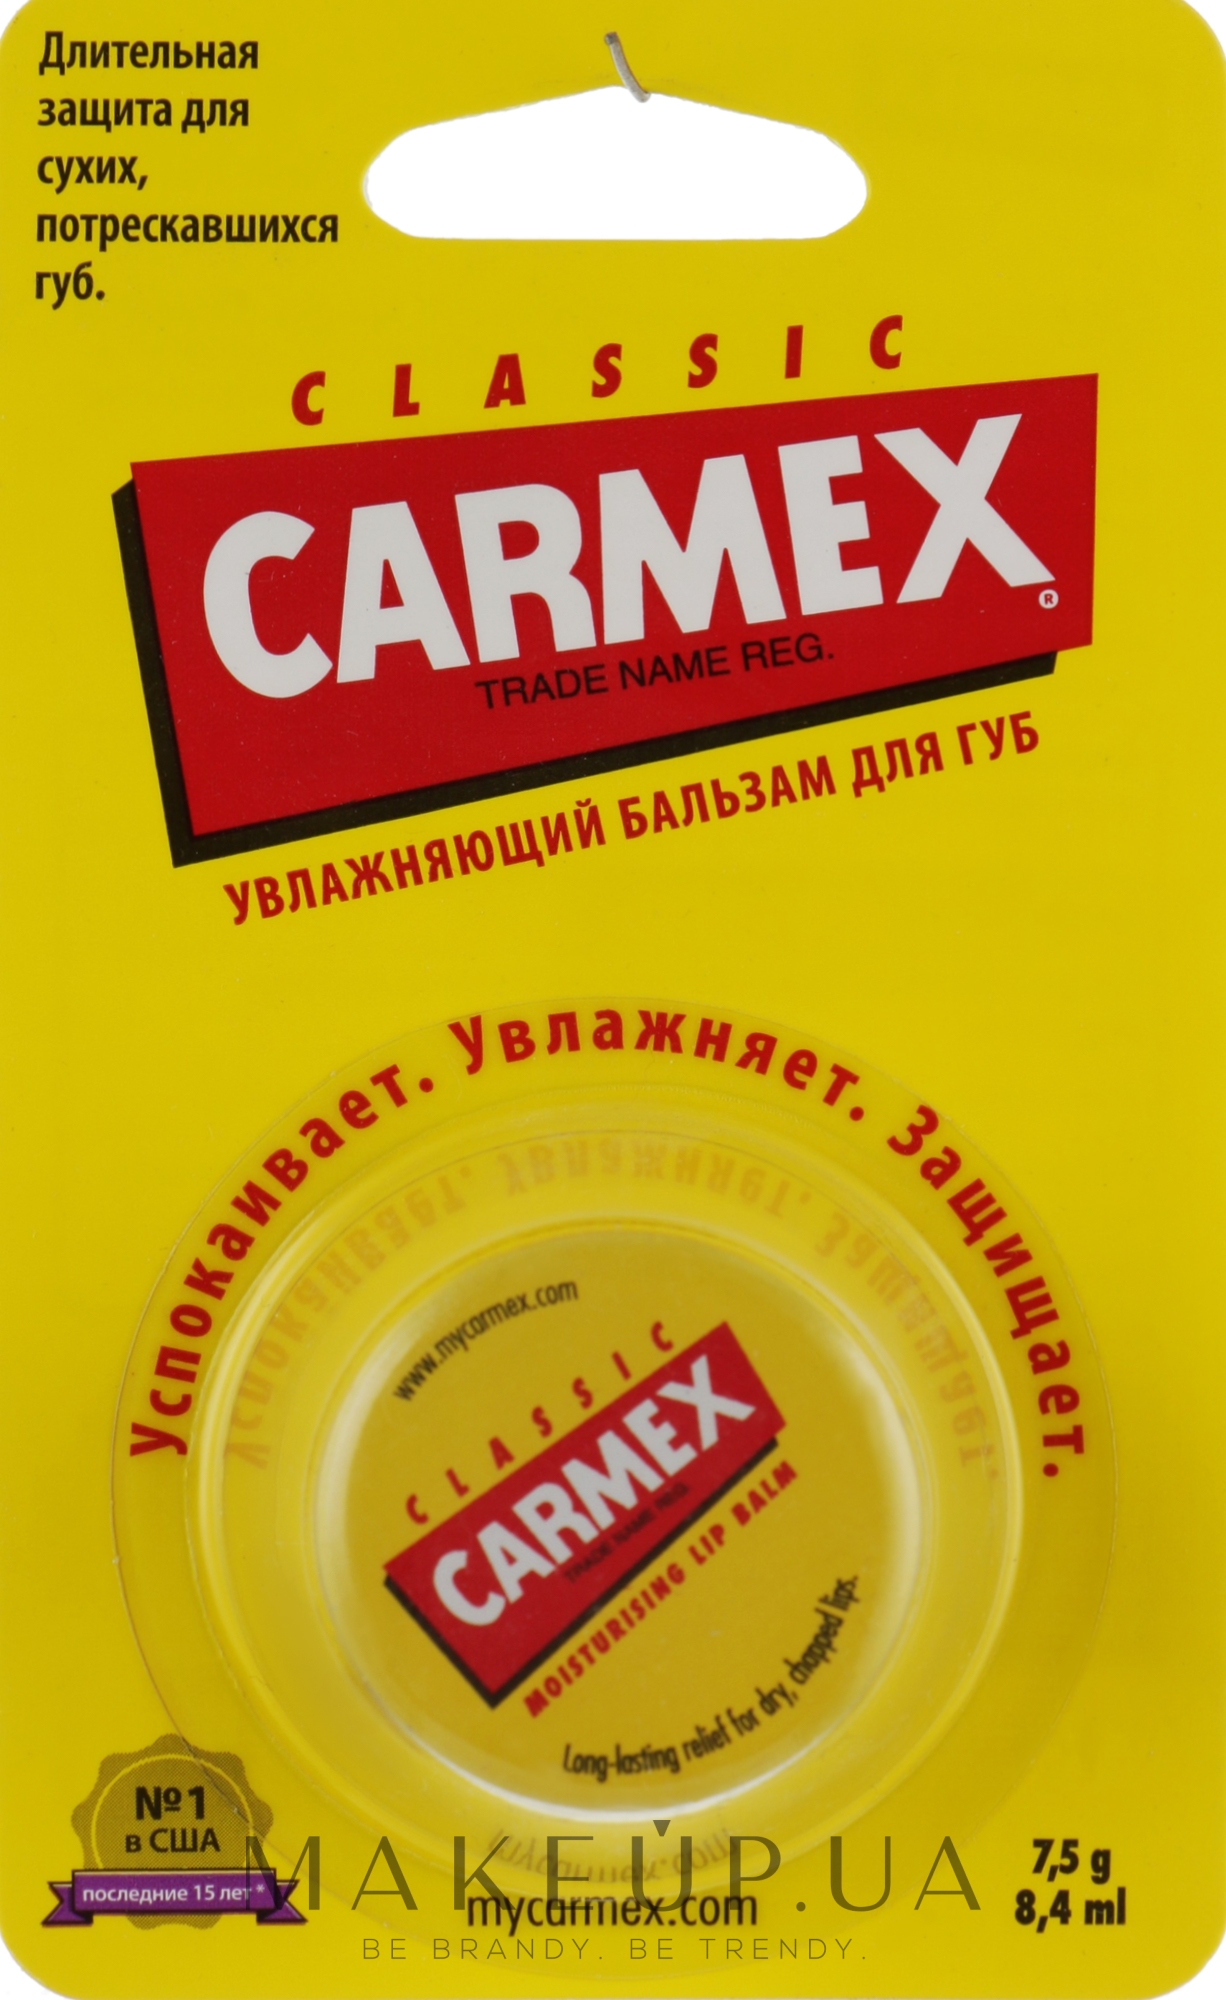 Бальзам для губ "Классический" в баночке - Carmex Classic Lip Balm — фото 7.5g